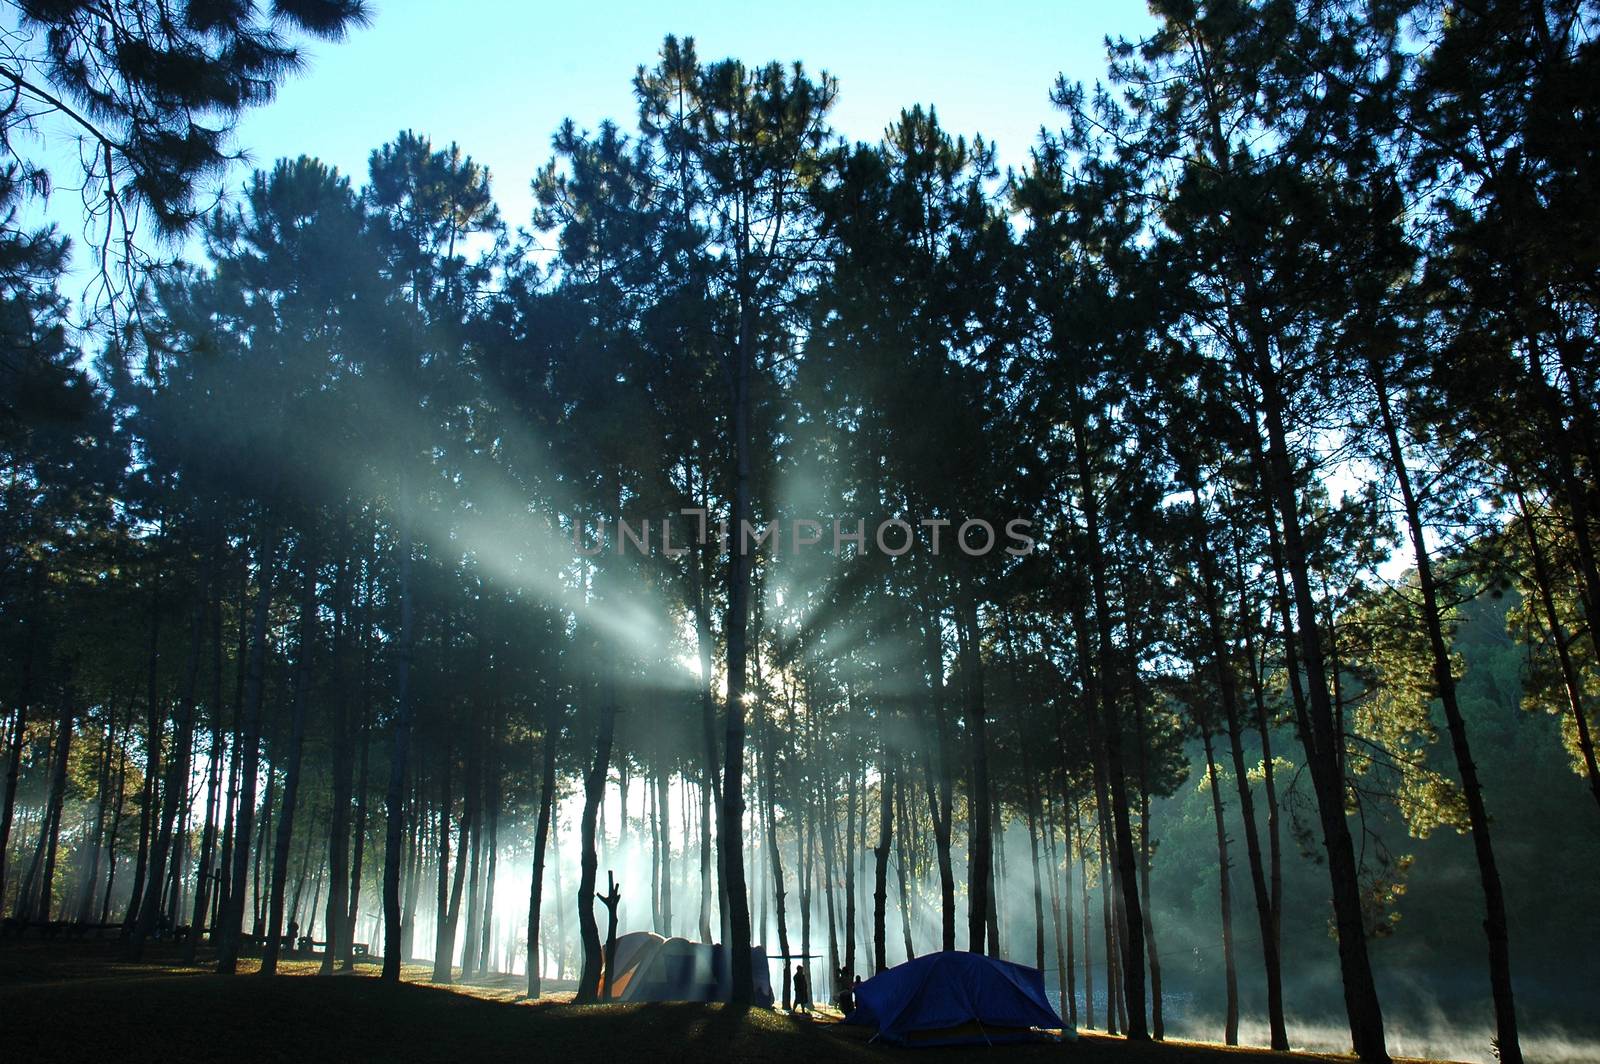 Sunlight shining through the pines at Pang Ung ,Maehongson,Thailand.